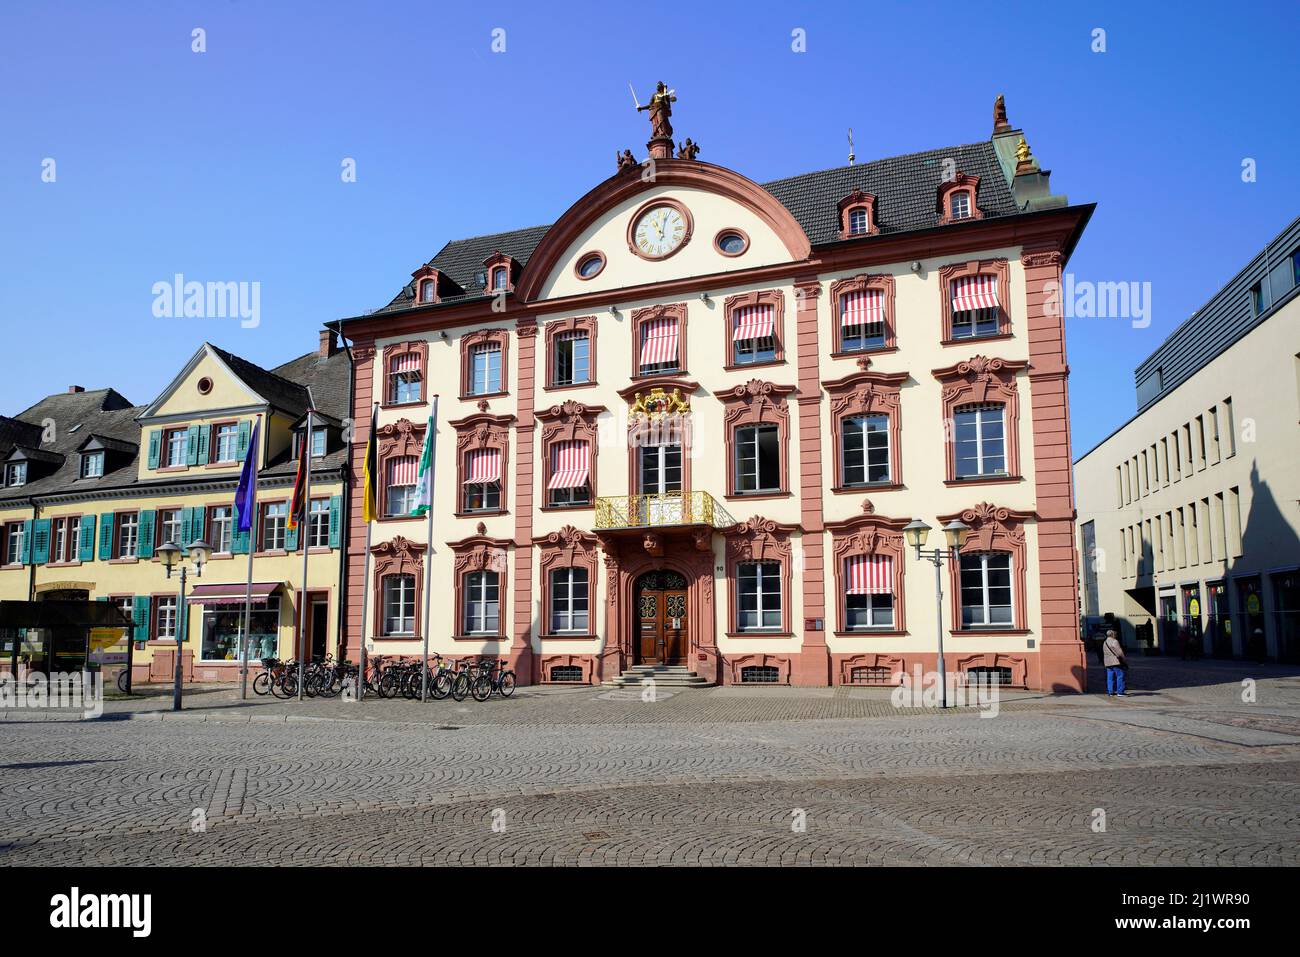 Hôtel de ville à Offenburg. Offenburg est une ville située dans l'État de Bade-Wurtemberg, en Allemagne Banque D'Images